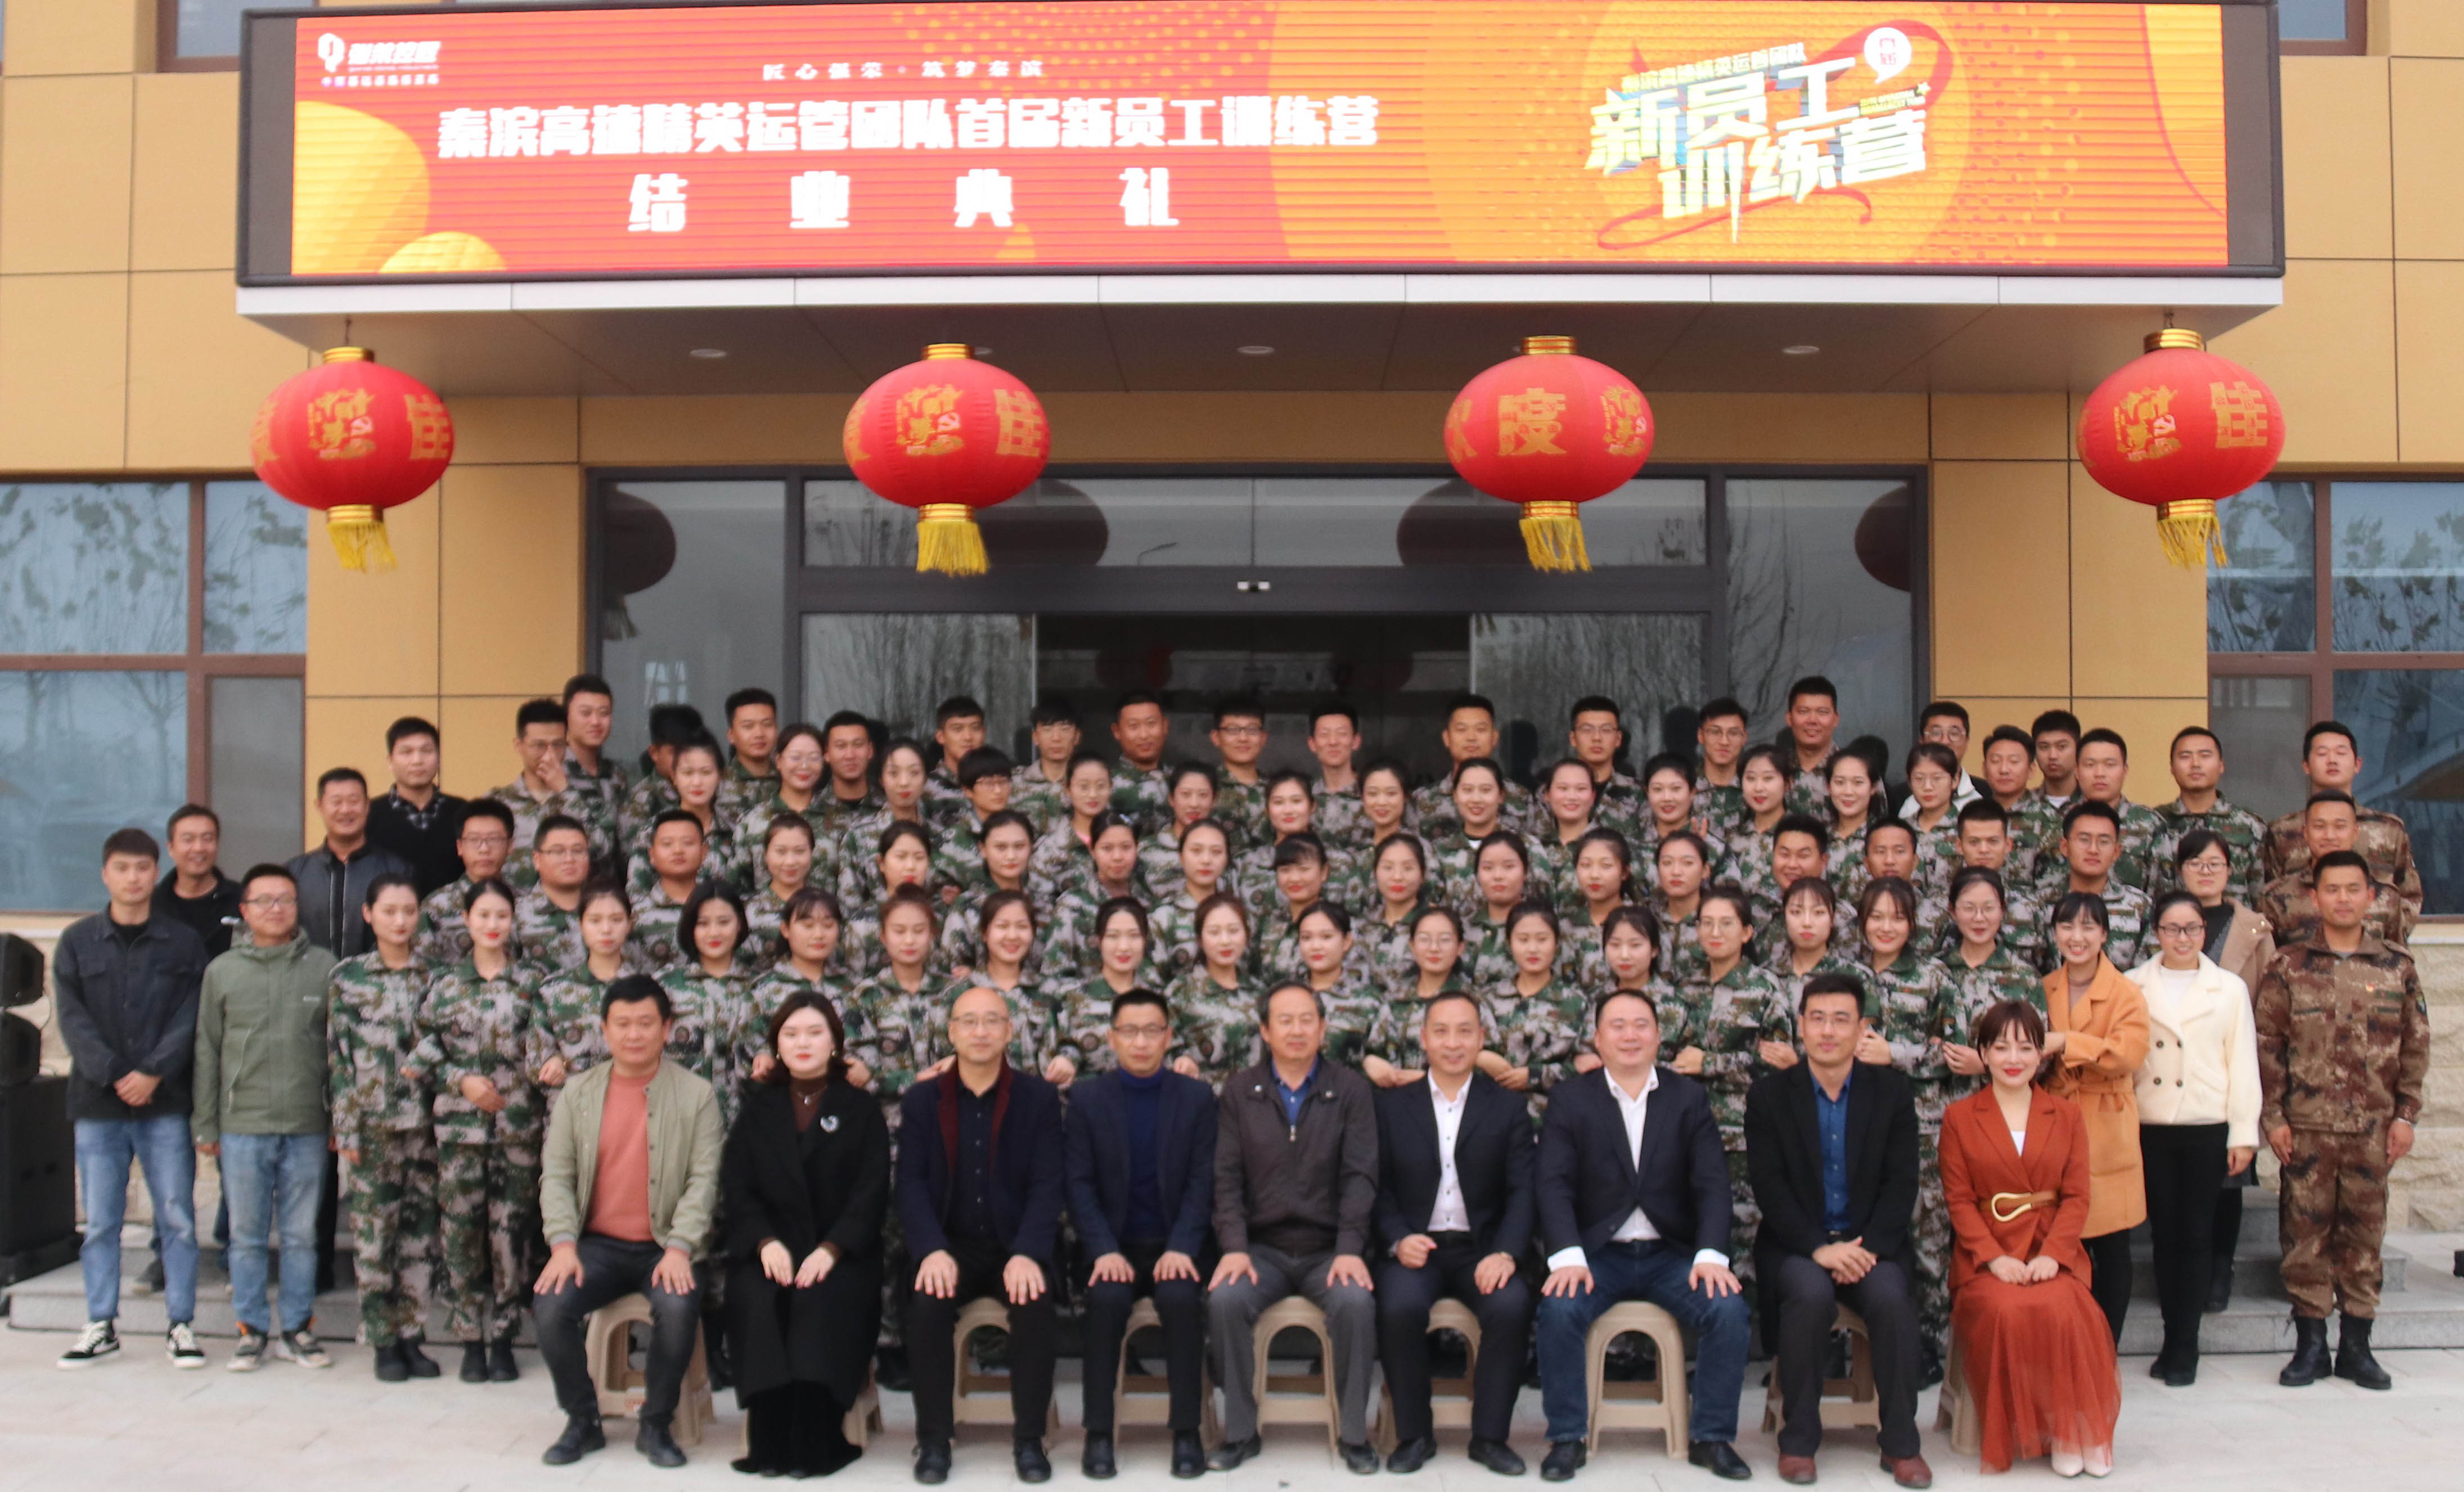 秦滨高速精英运管团队首届新员工训练营结业典礼隆重举行